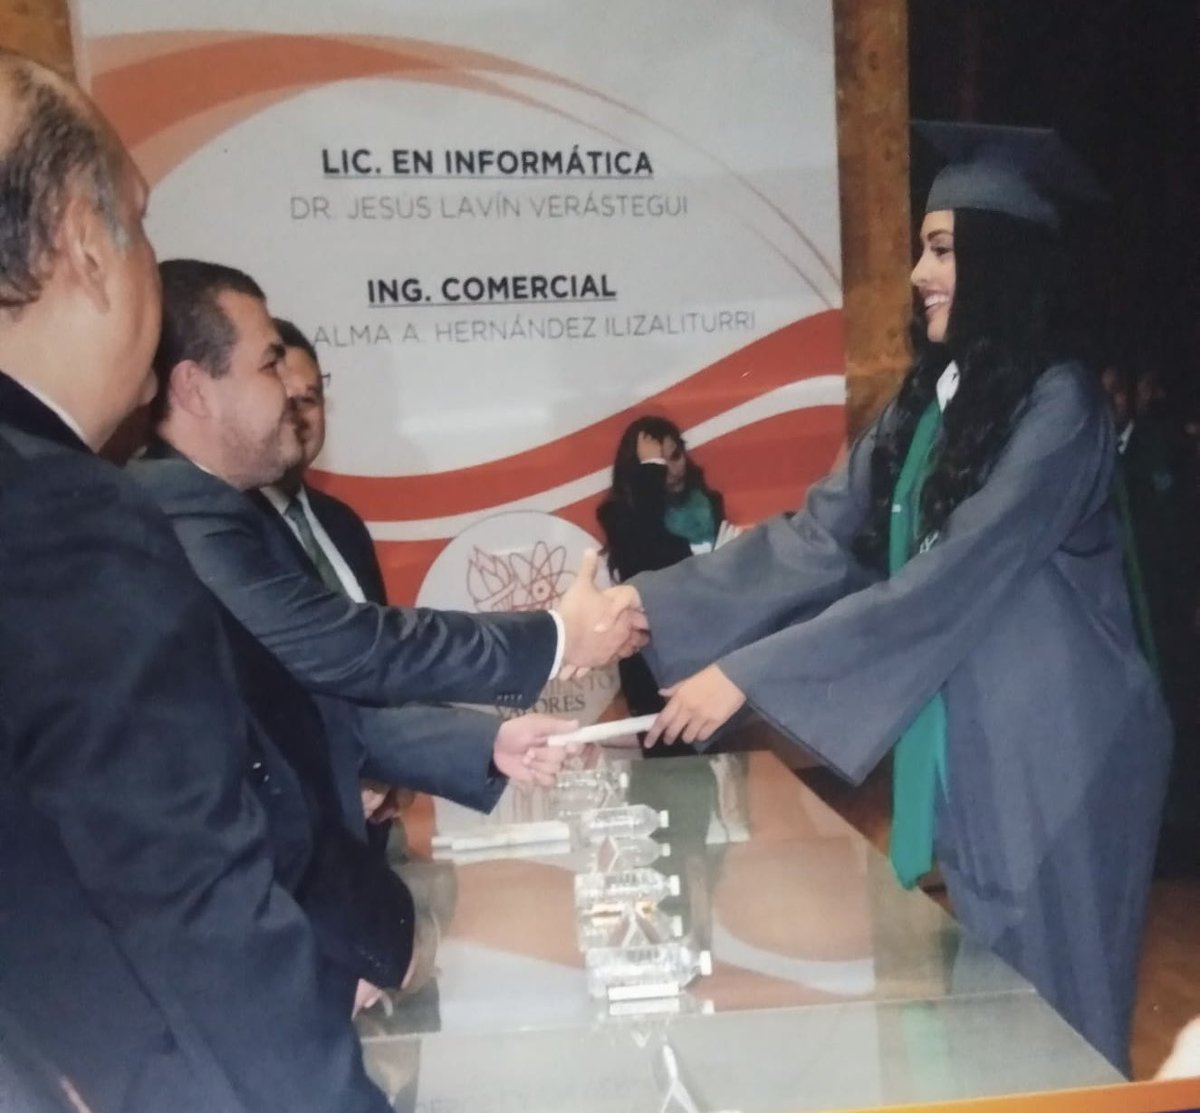 #VengaElTbt Recordando mi graduación 👩🏻‍🎓😅 
Lic. en Administración 🙌🏻 #FCAV #UAT 
Compartan el suyo nosotros 😘 @VengaLaAlegria